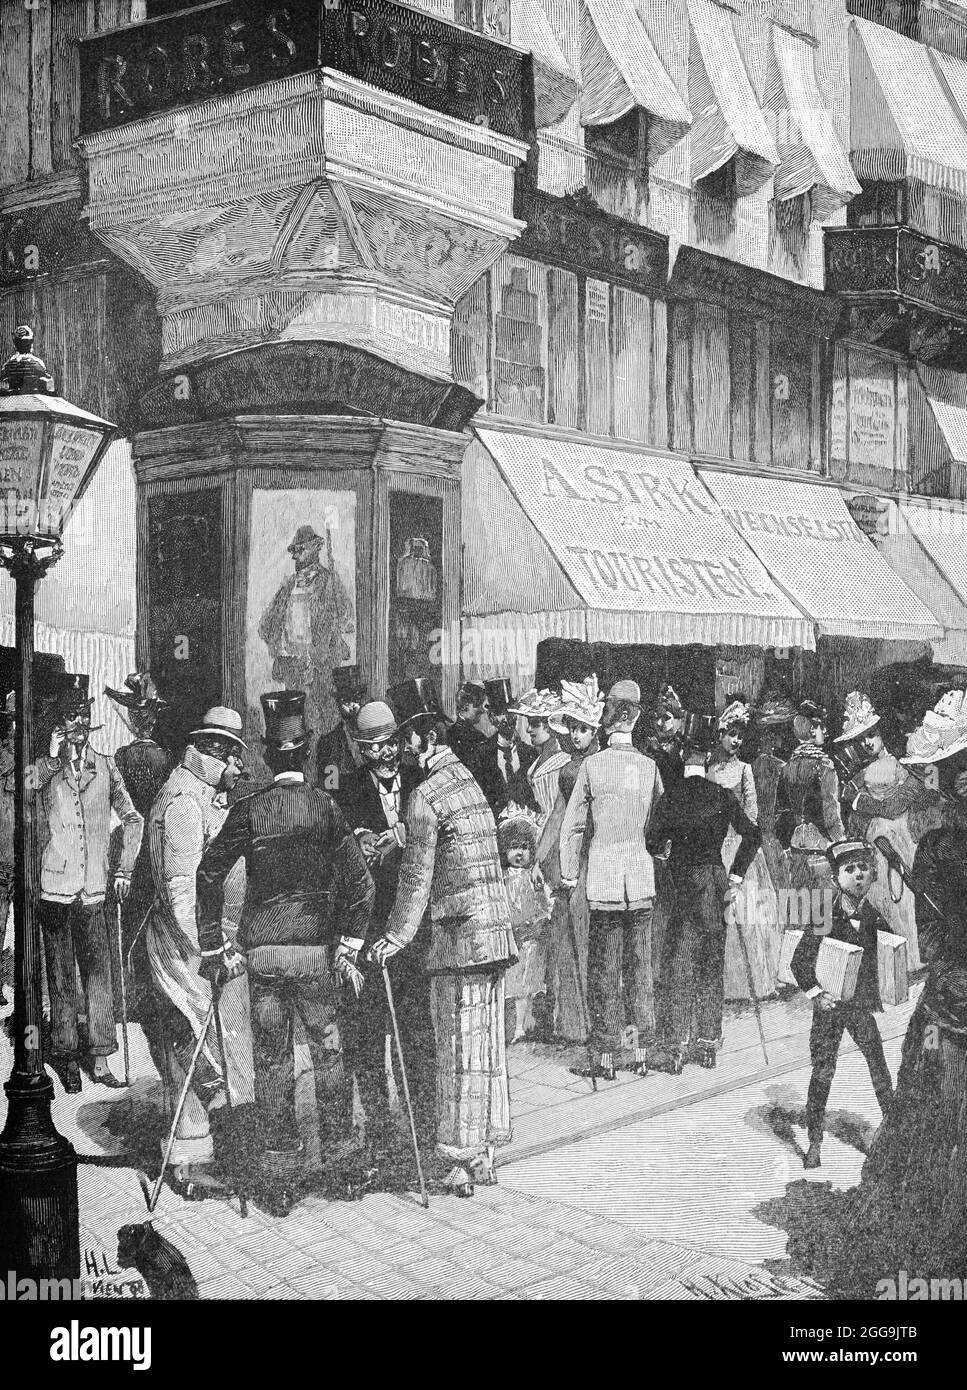 Scena stradale in un angolo vivace a Vienna, Austria, Europa, Hauptstädte der Welt, illustrazione storica 1897 Foto Stock